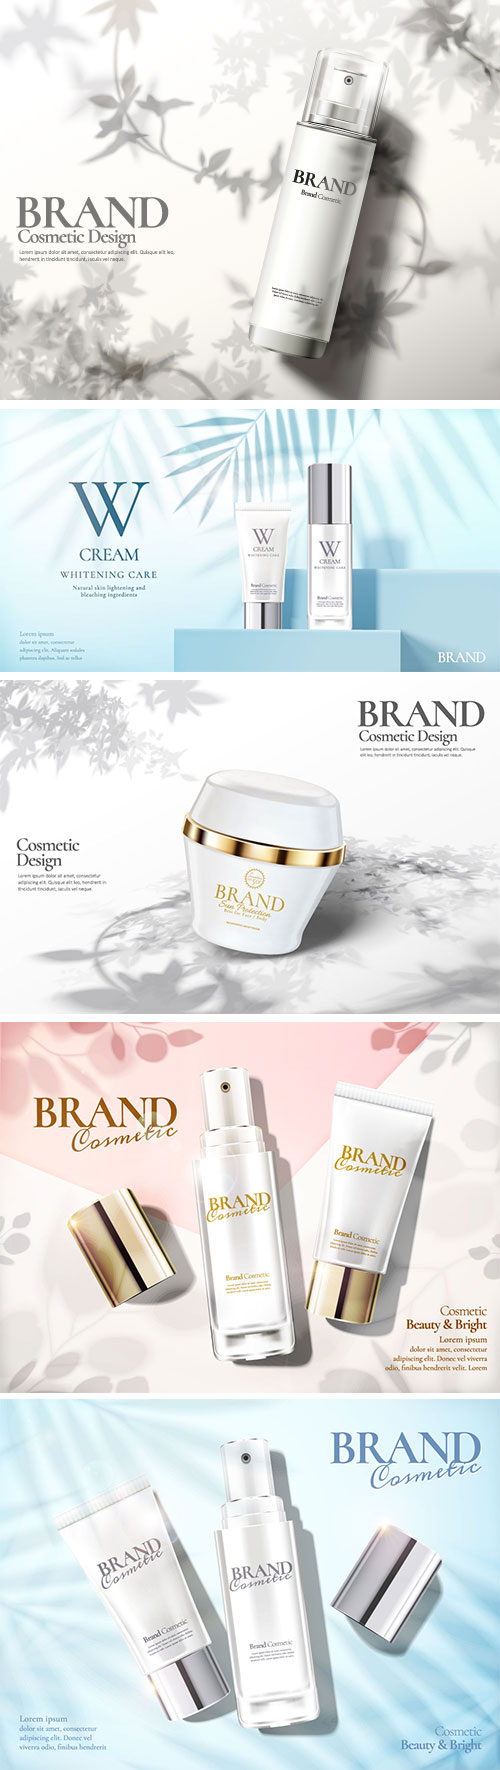 Skin care set ads vector illustration template